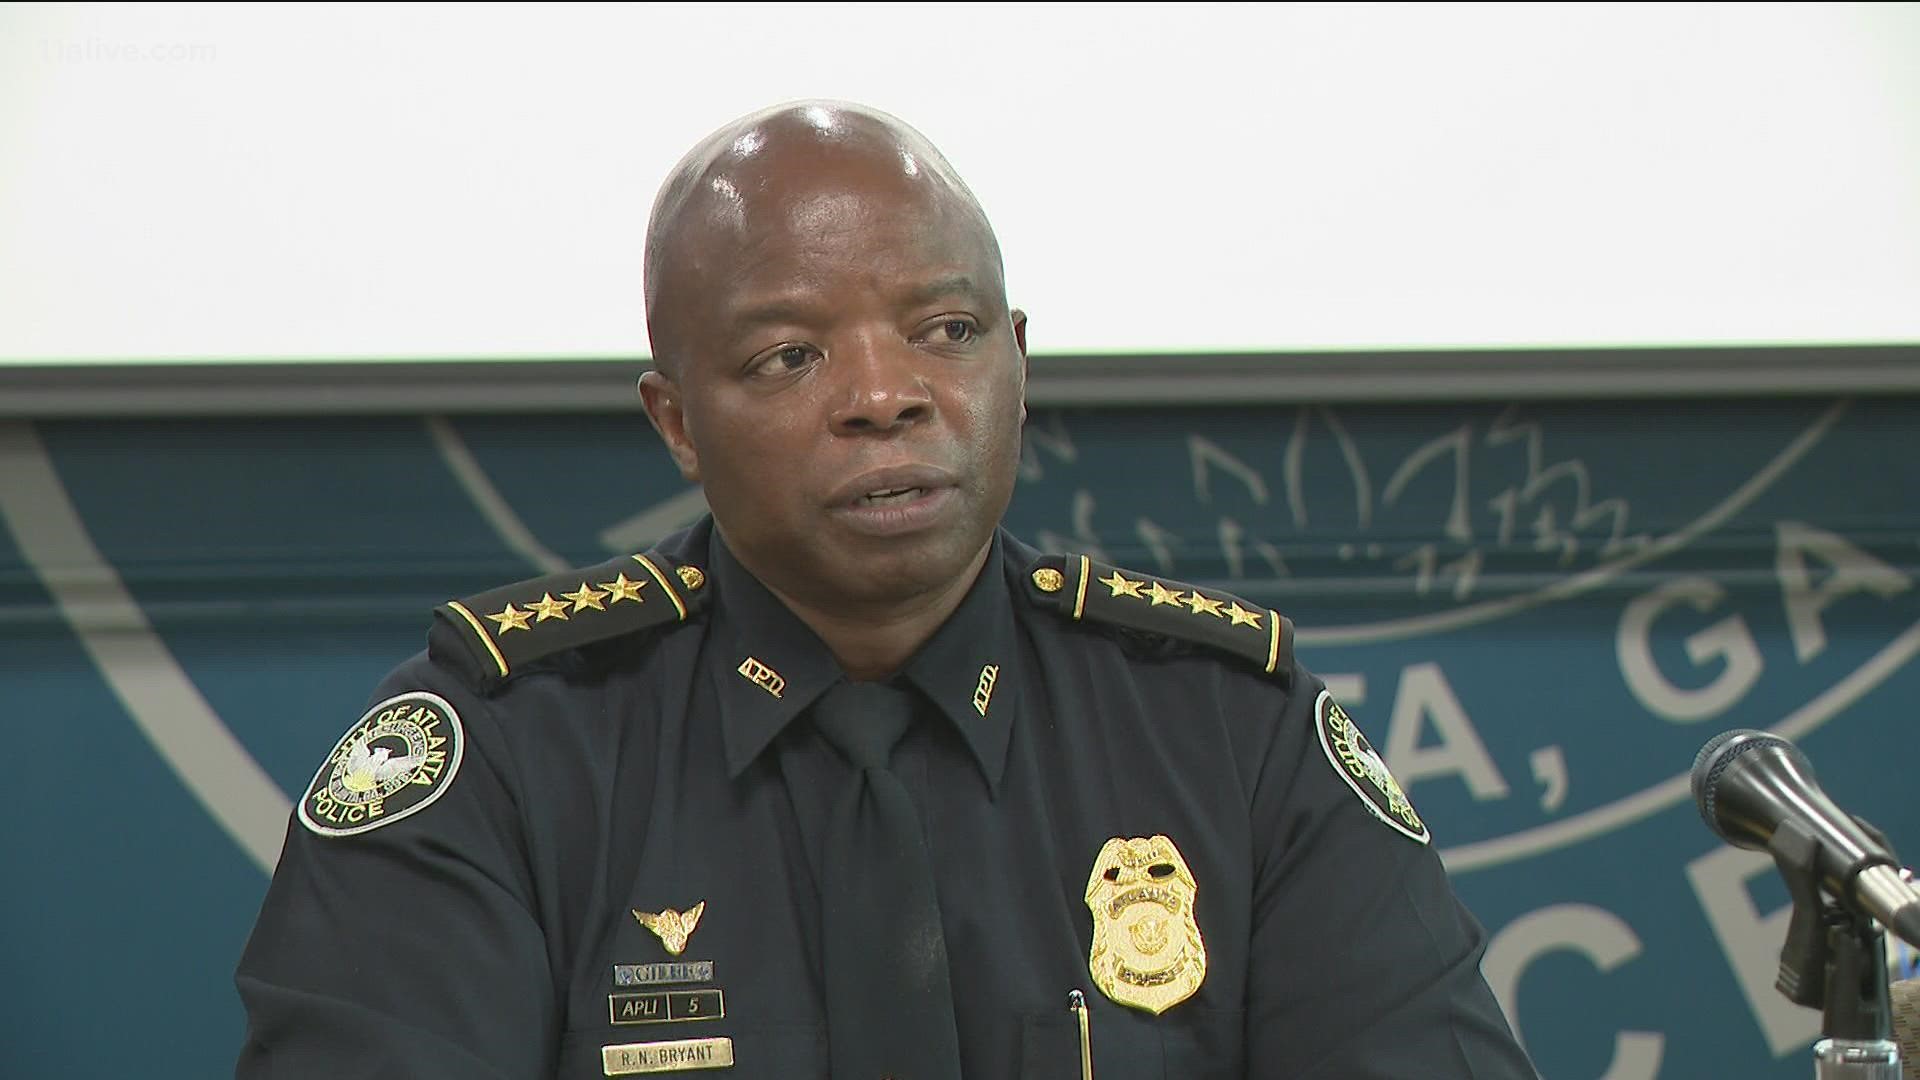 Atlanta Police Chief Bryant said public safety is a team effort.